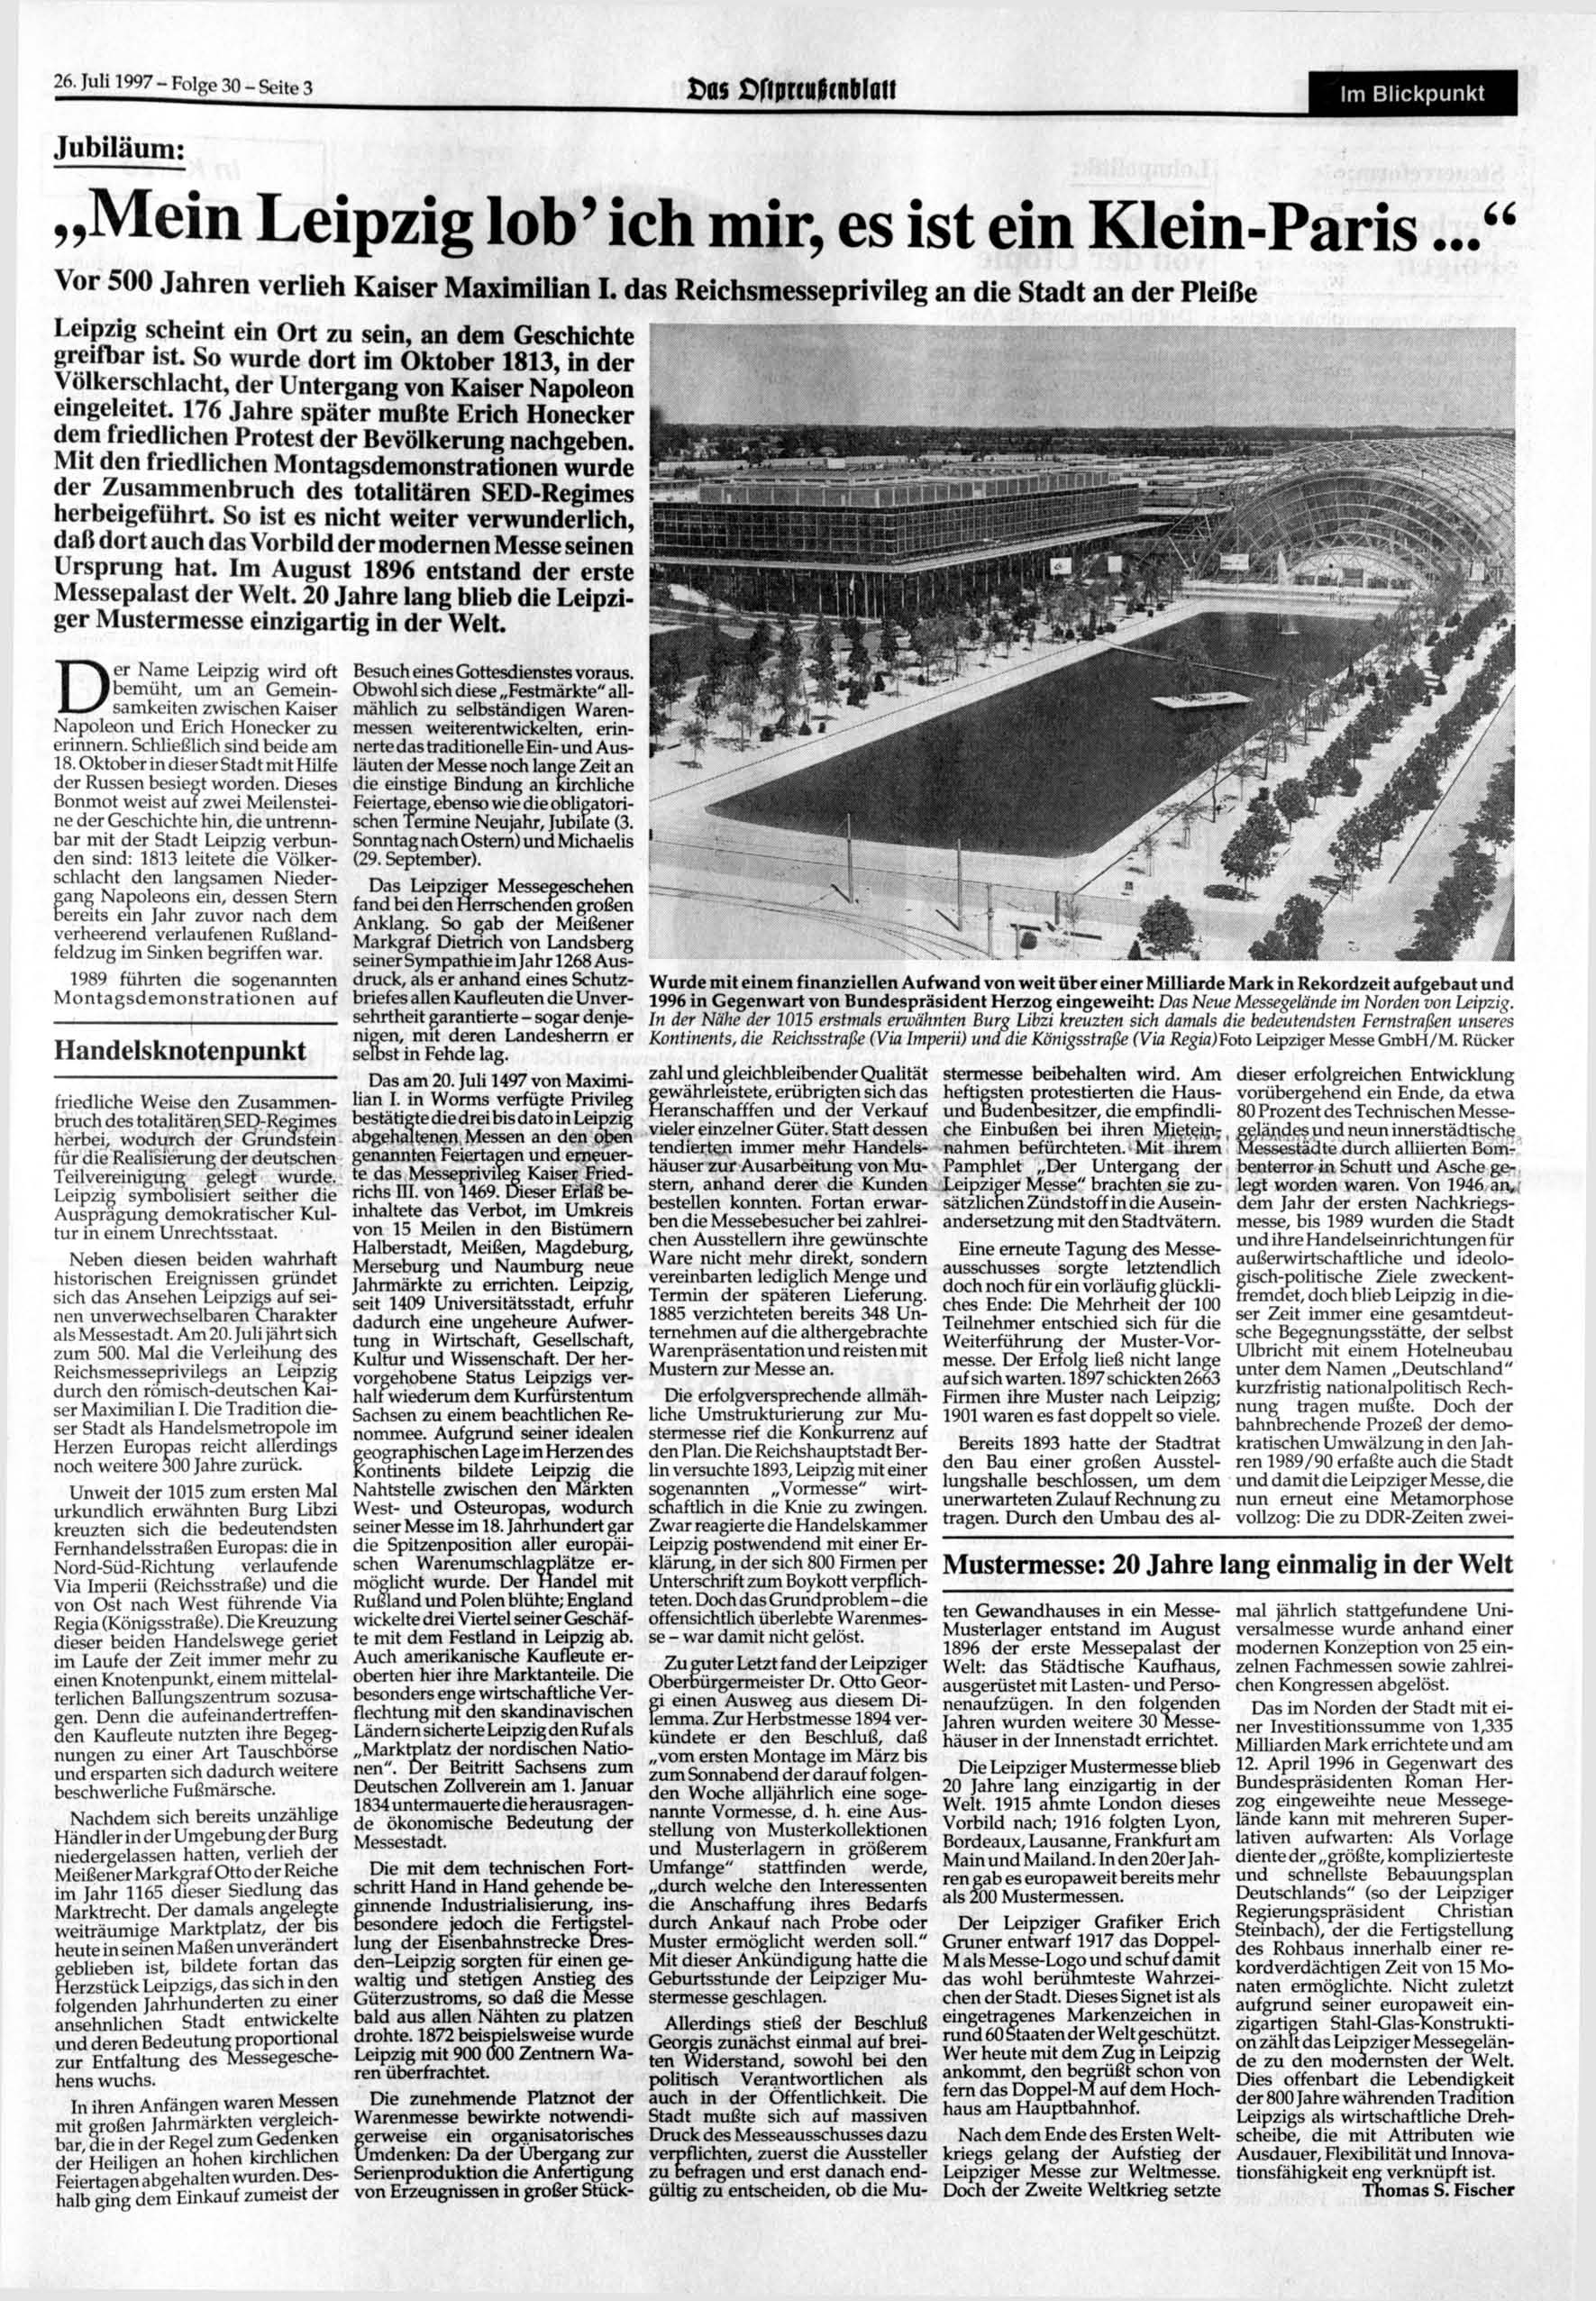 26. 1997- Folge 30 - Seite 3 Das Cfipreuicnblati m Blickpunkt Jubiläum: Mein Leipzig lob' ich mir, es ist ein Klein-Paris..." Vor 500 Jahren verlieh Kaiser Maximilian.